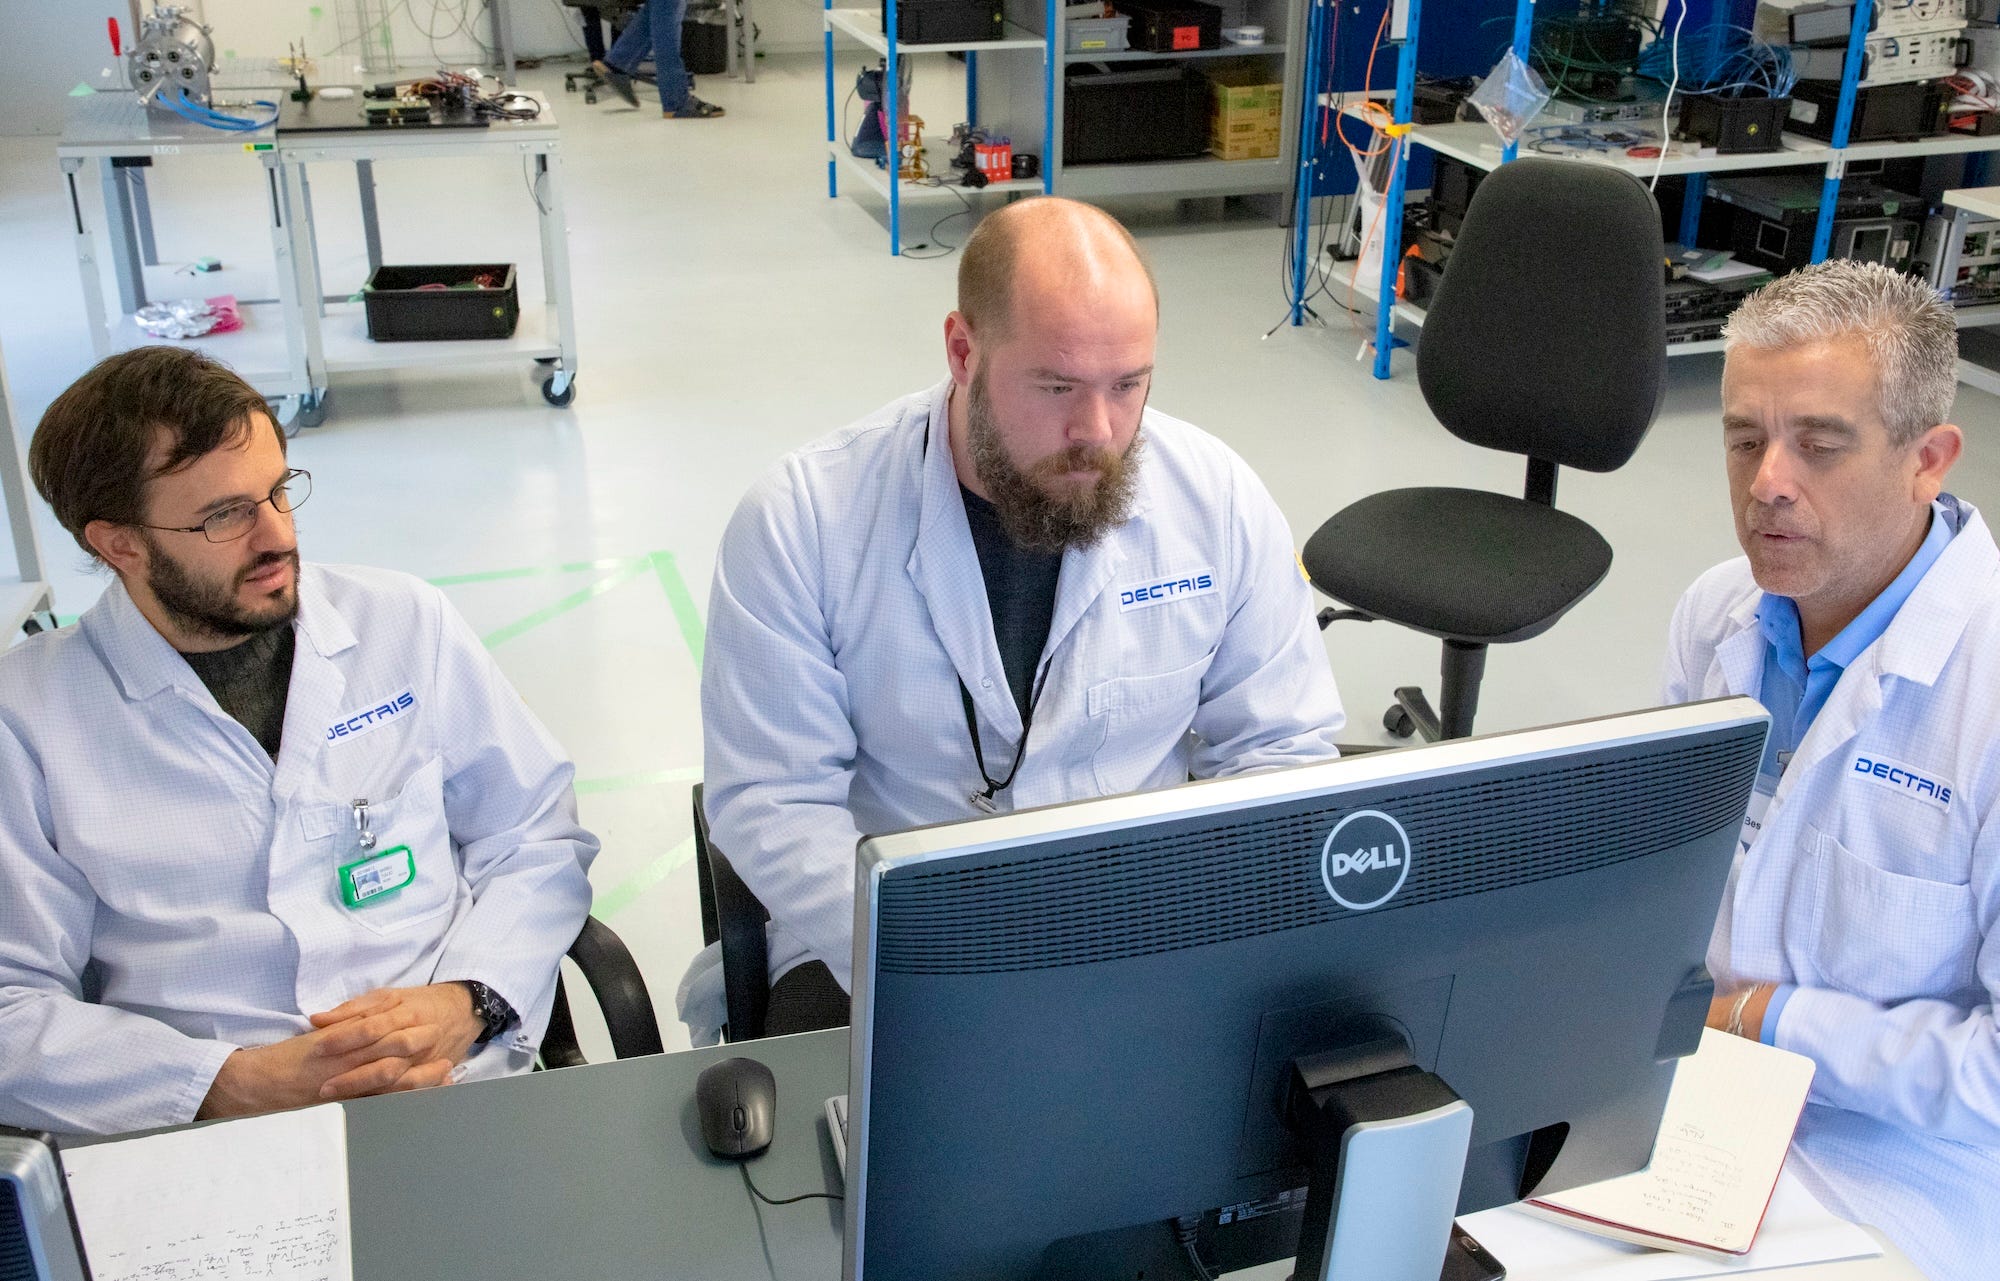 Drei Männer in weißen Laborkitteln sitzen an einem Schreibtisch und schauen auf einen Computer